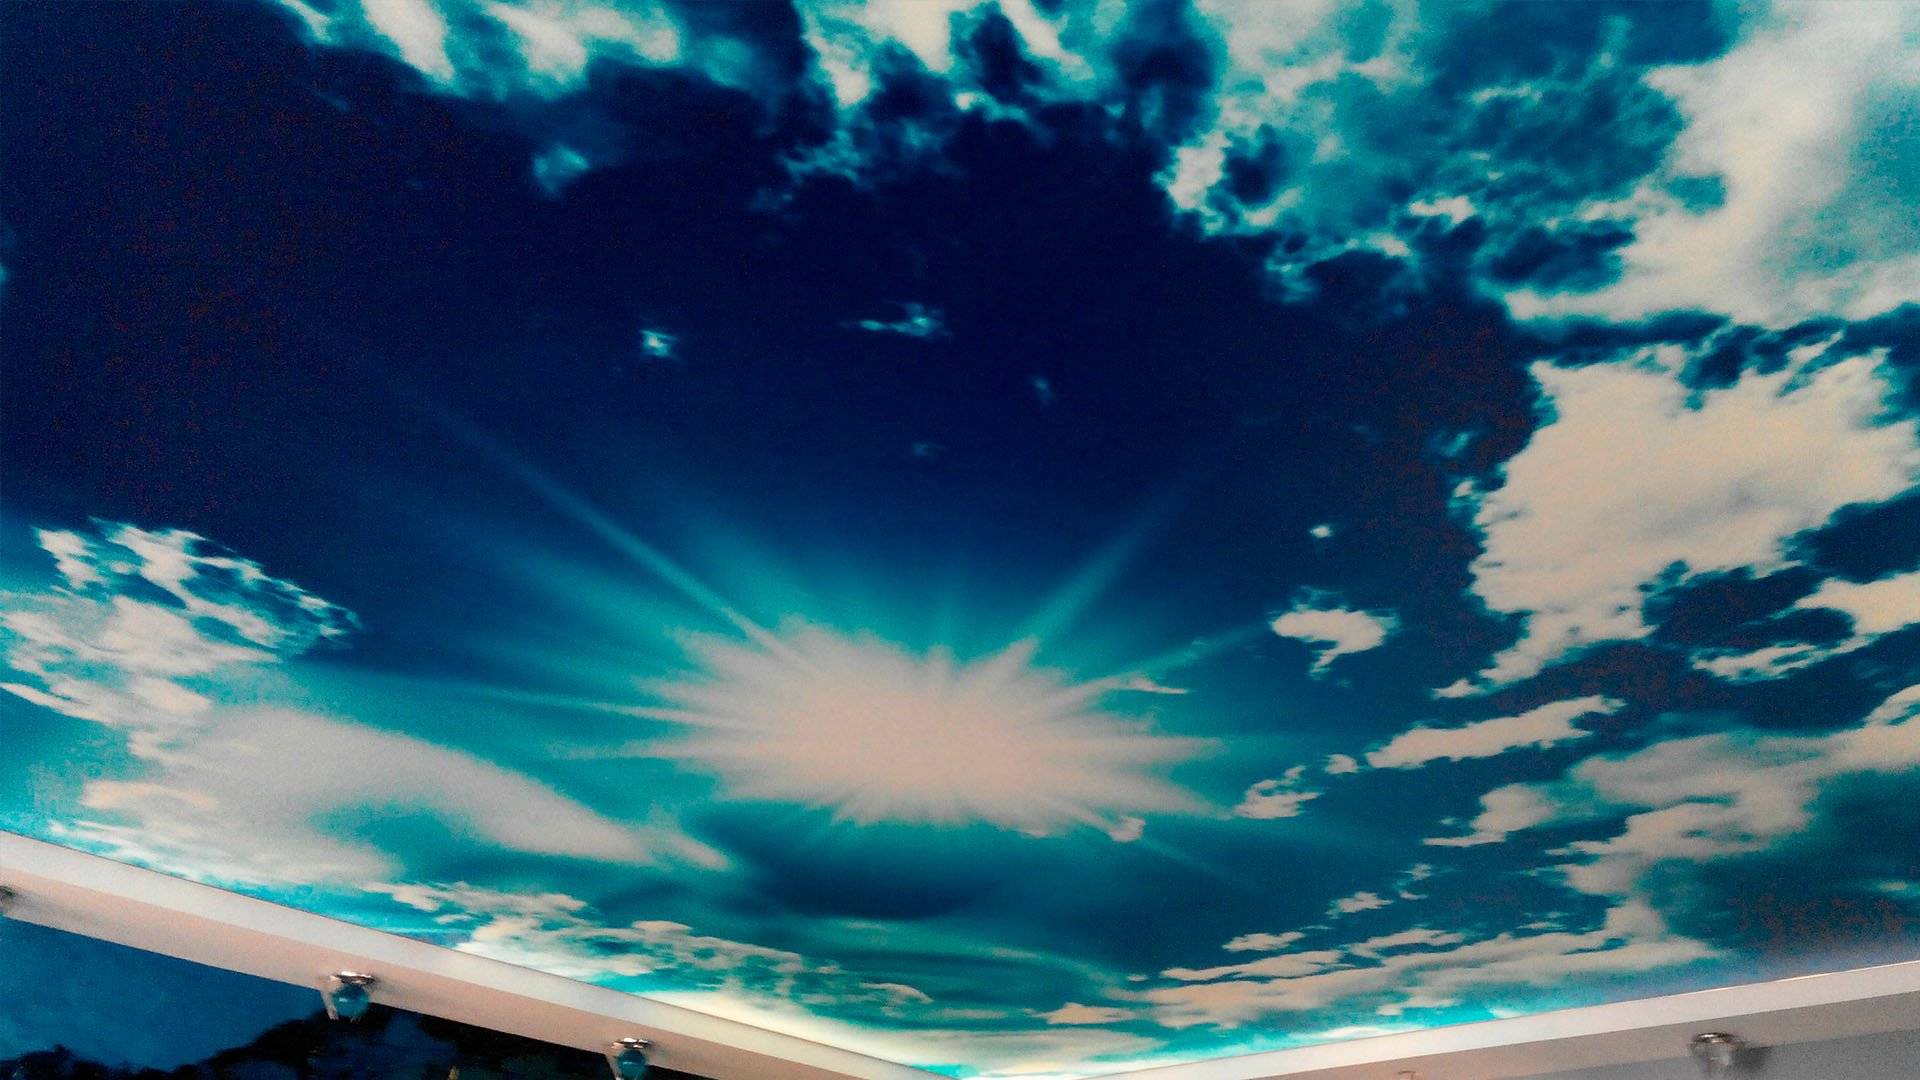 Обои на потолок облака: интересные идеи для красивого оформления (+38 фото)